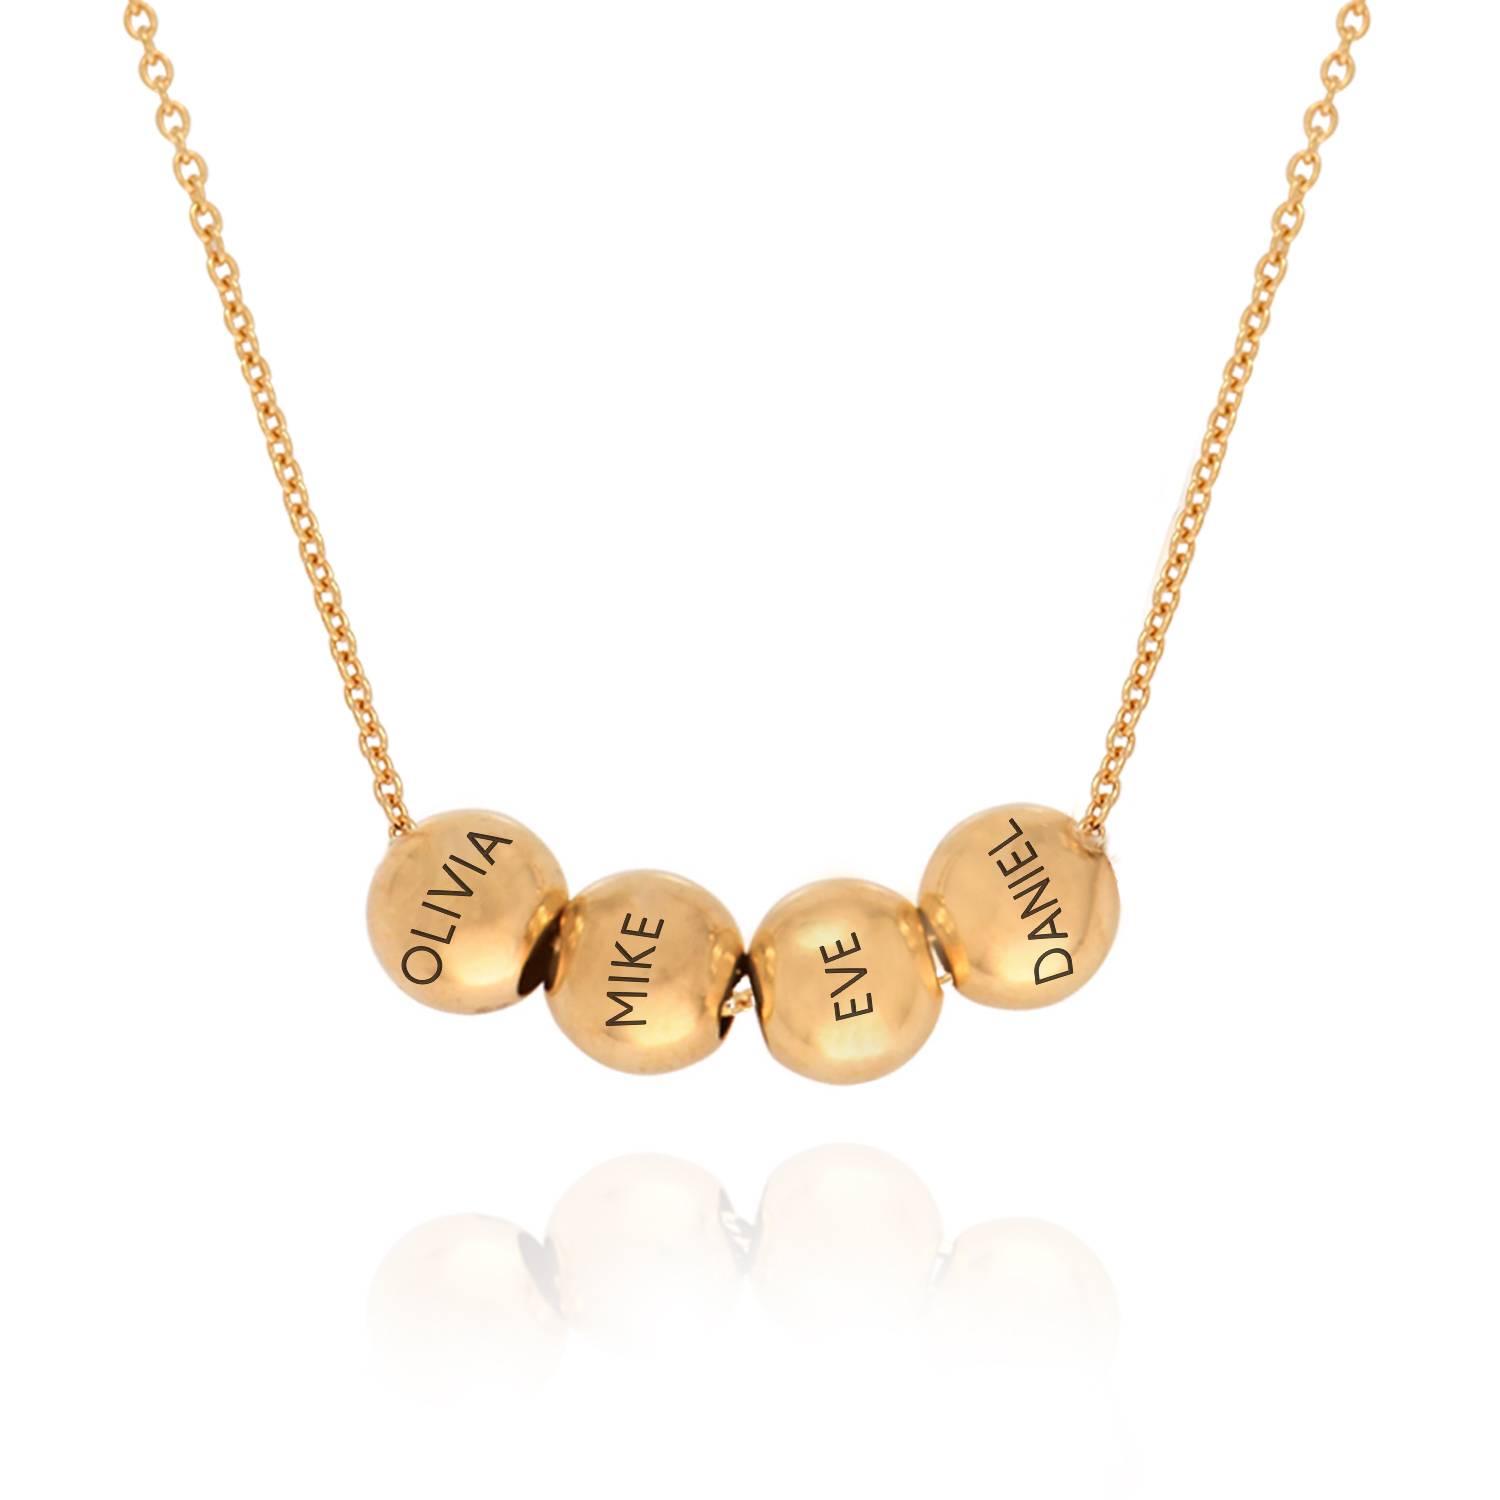 Balance halskæde med Kabelkæde i guld vermeil produkt billede